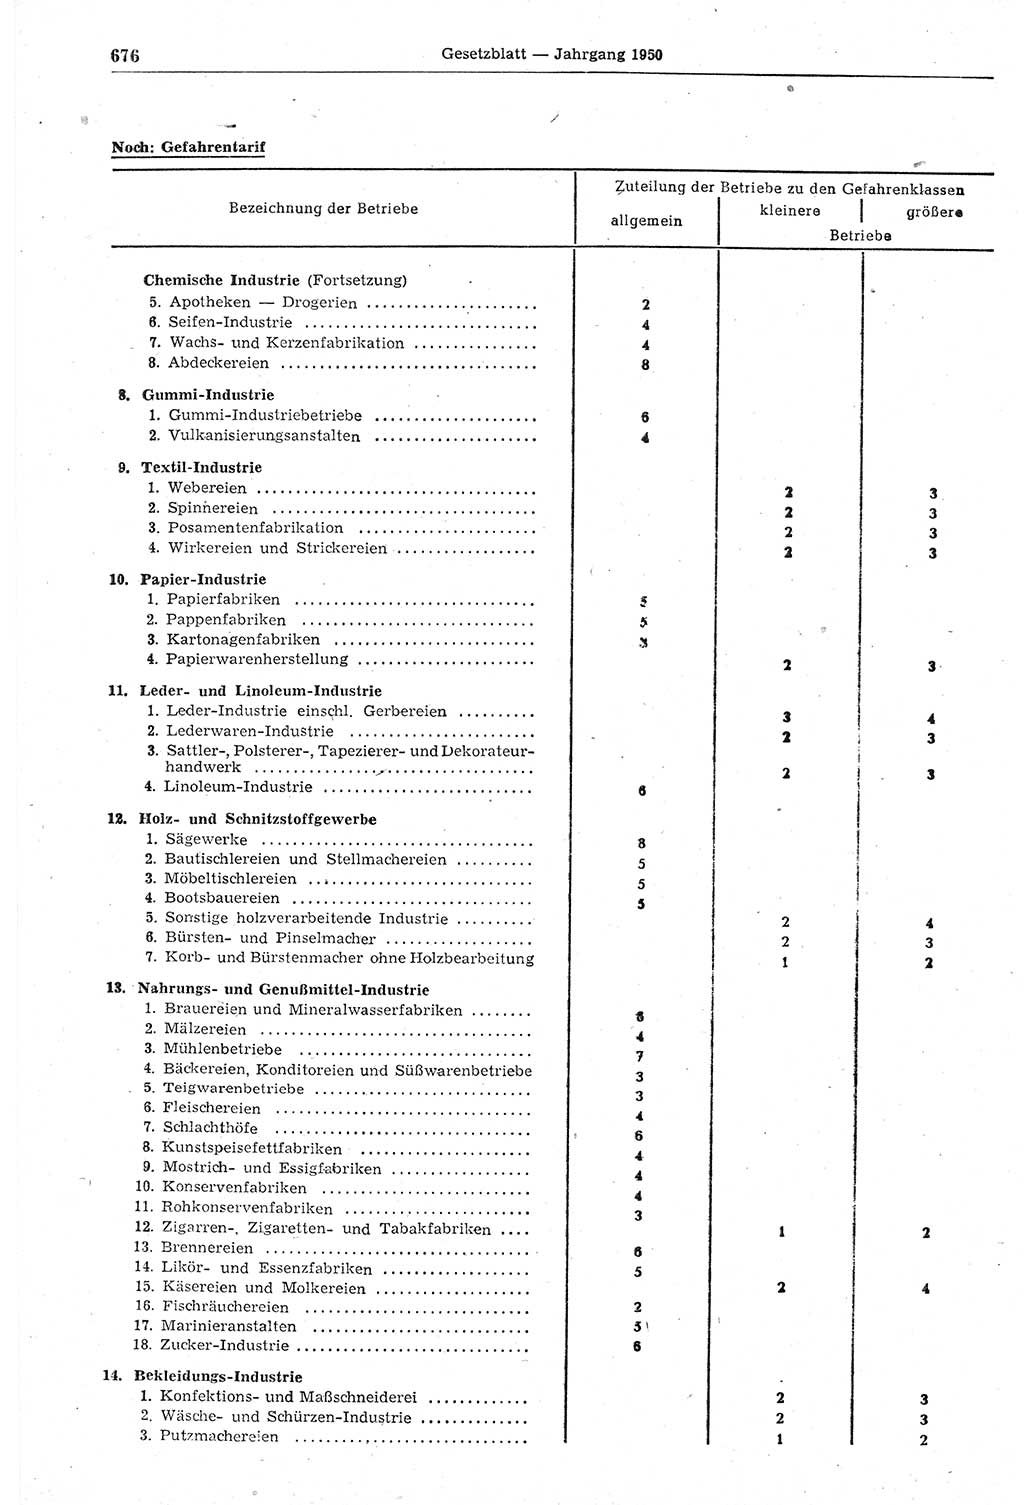 Gesetzblatt (GBl.) der Deutschen Demokratischen Republik (DDR) 1950, Seite 676 (GBl. DDR 1950, S. 676)